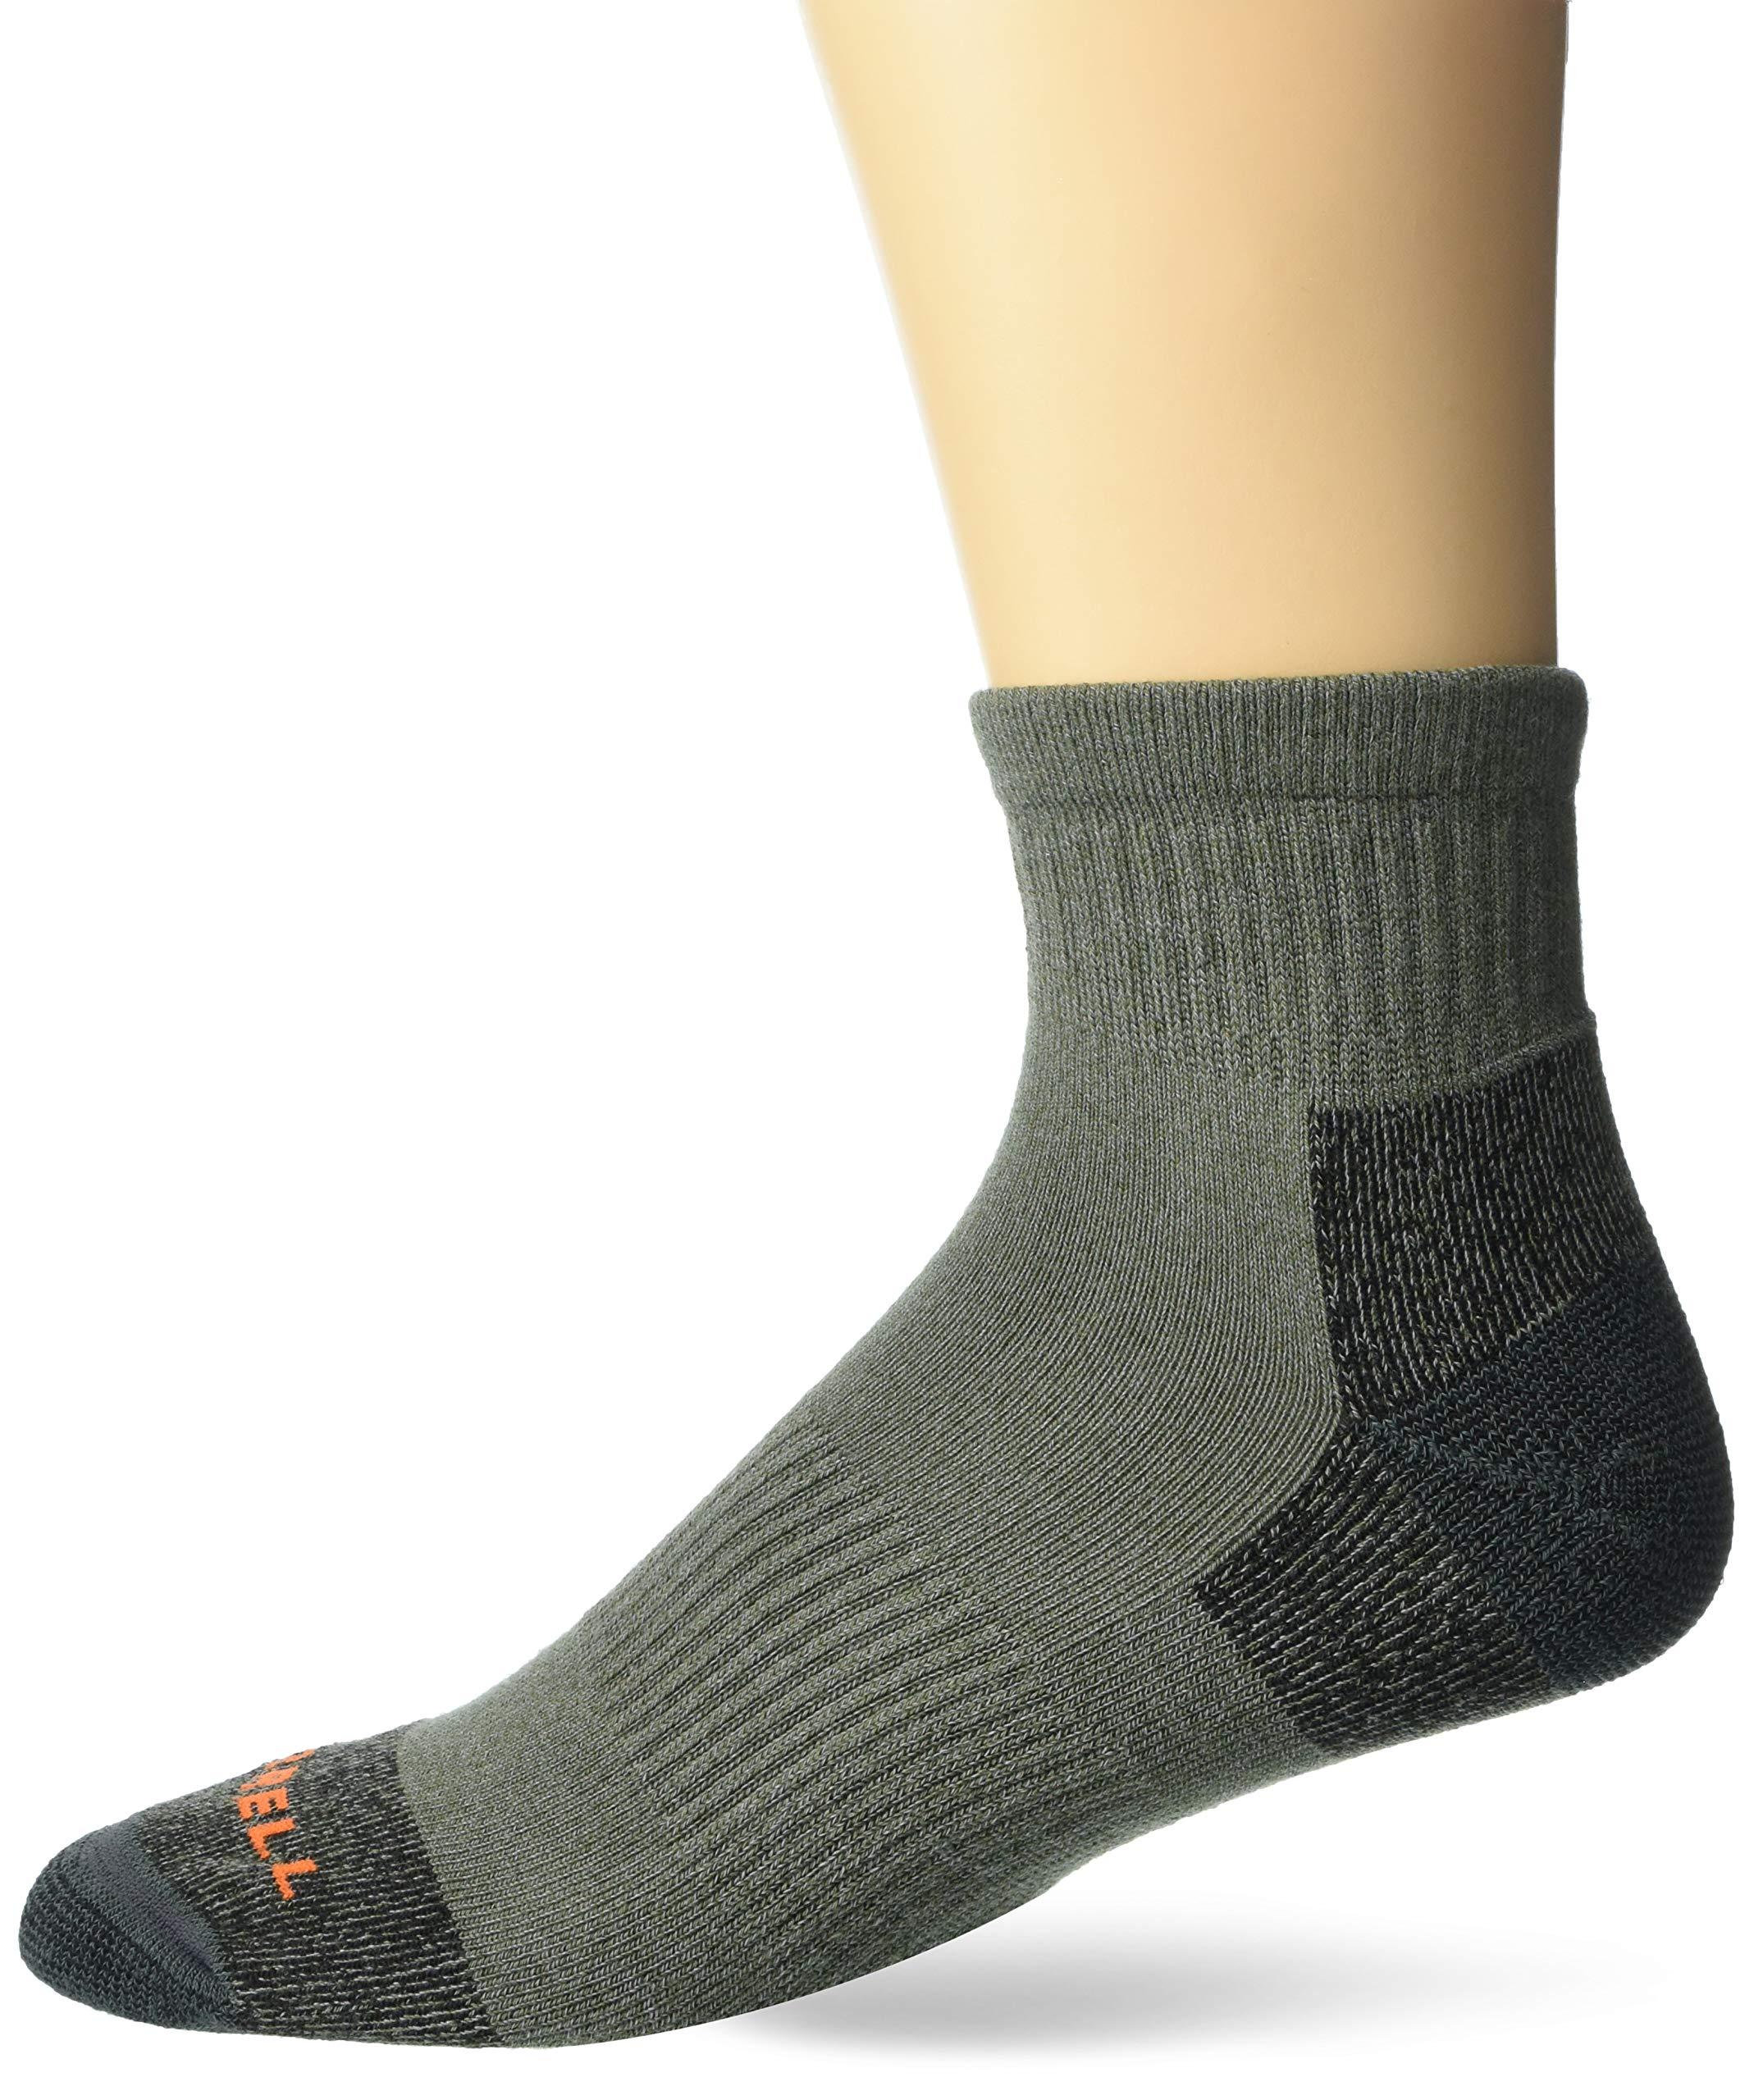 Merrell Moab Hiker Ankle Socks 1 Pair in Olive (Green) for Men - Lyst